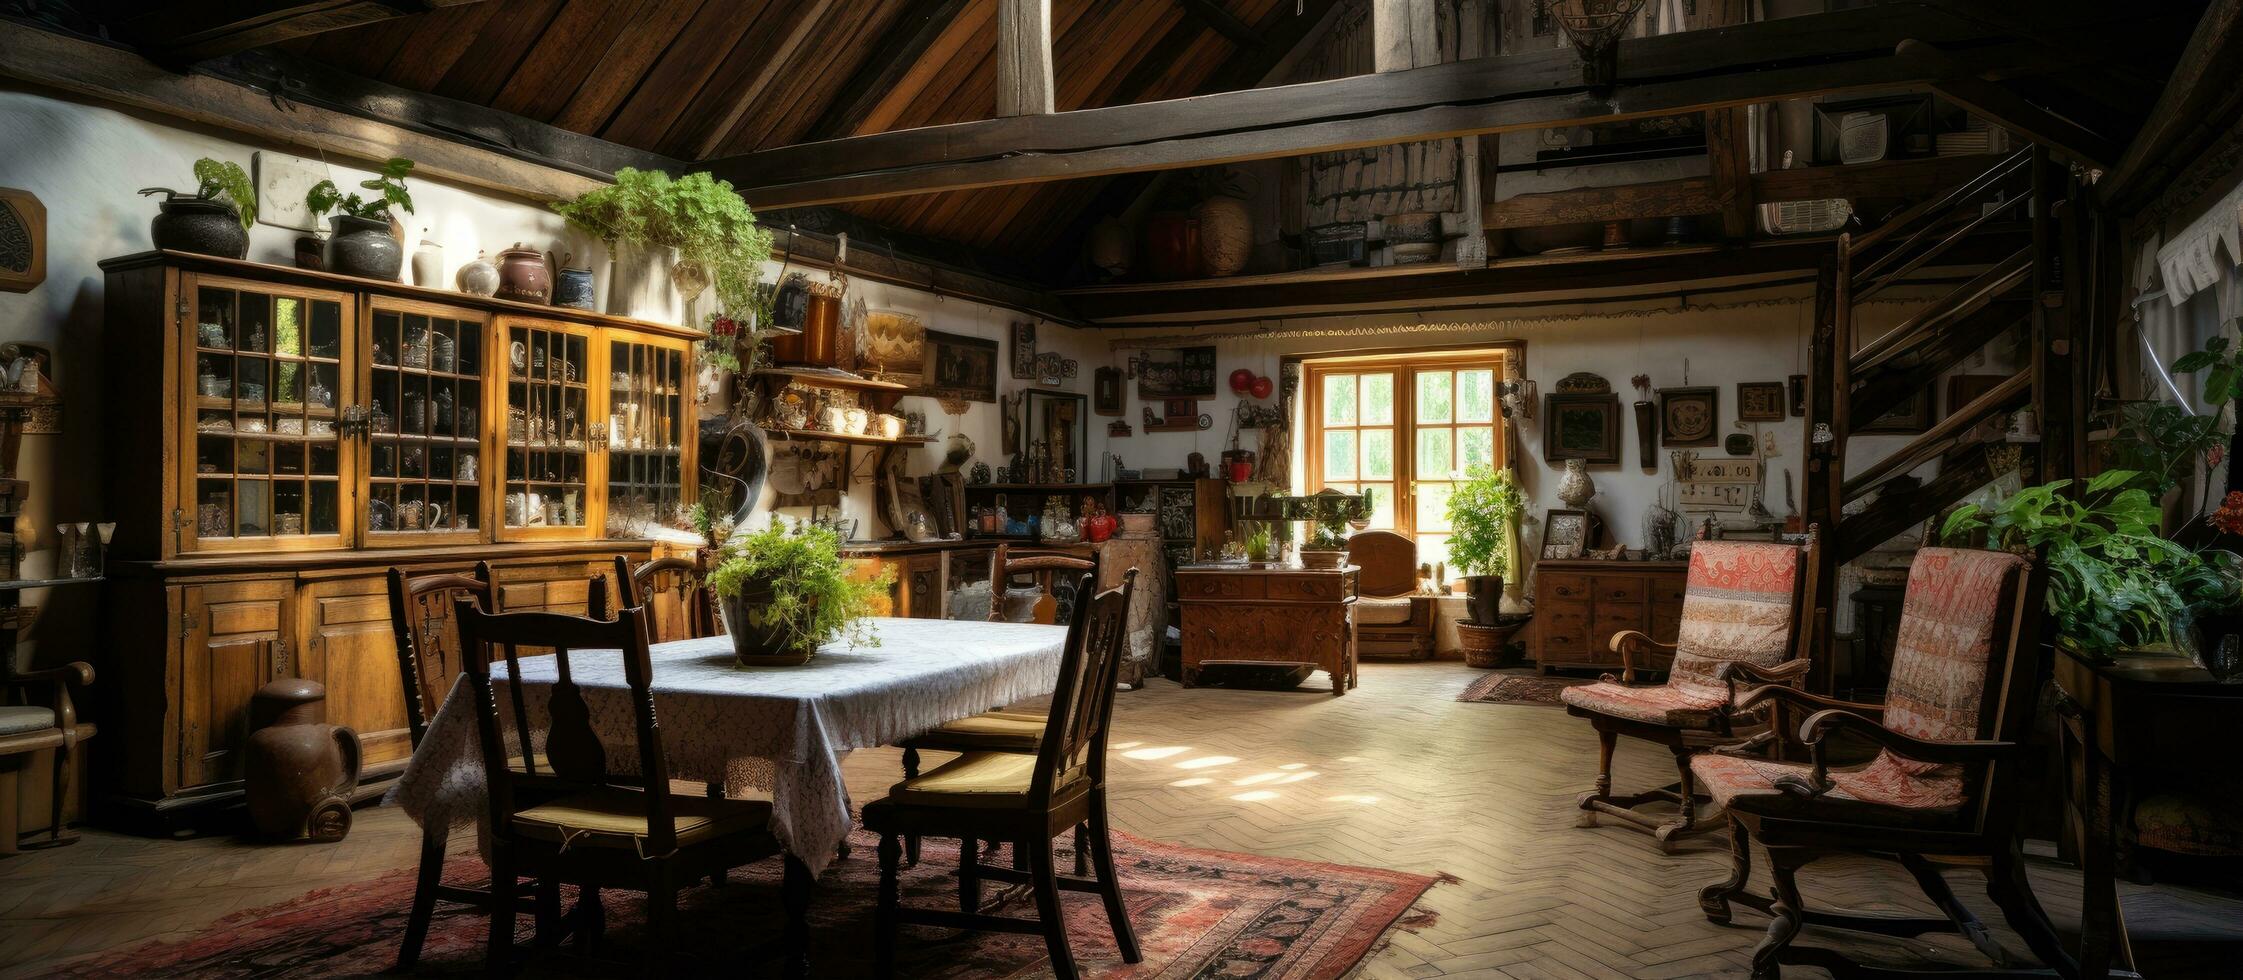 traditionell ryska egendom interiör av ett gammal bondgård foto